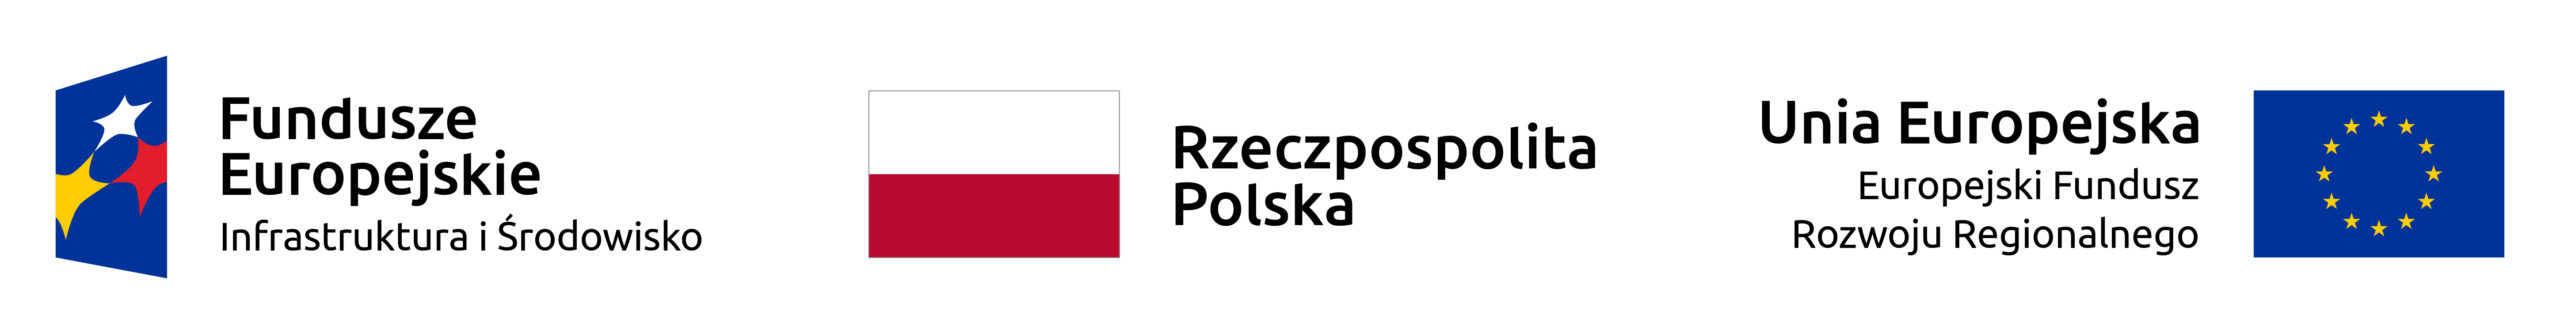 Logotypy: Fundusze Europejskie Infrastruktura i Środowisko, Rzeczpospolita Polska, Unia Europejska Europejski Fundusz Rozwoju Regionalnego